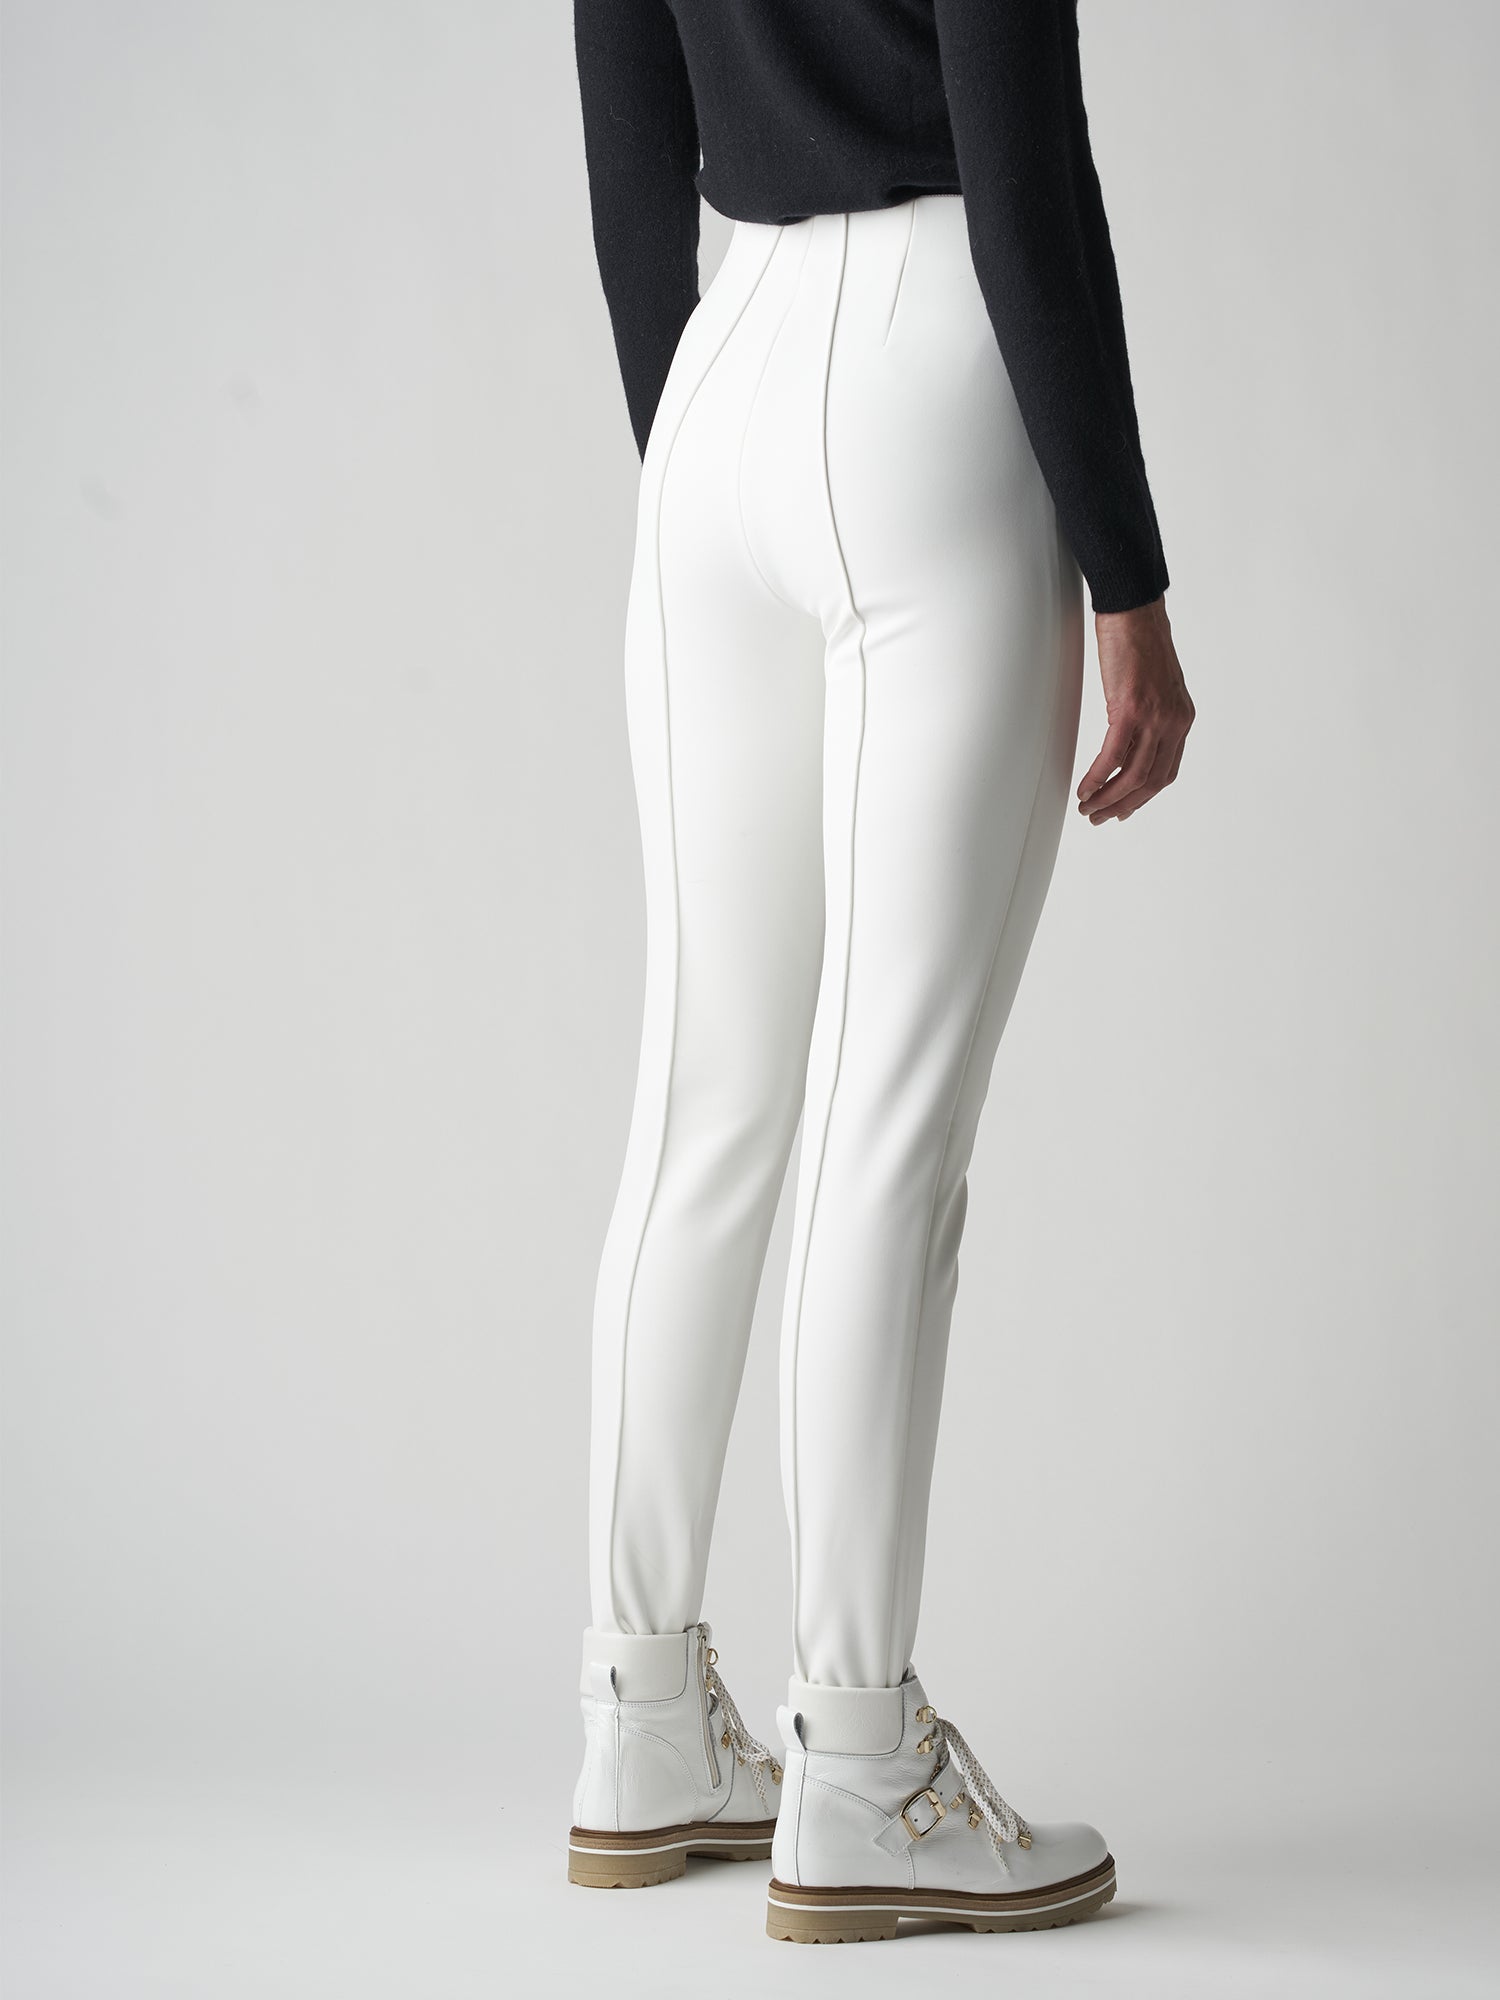 Womens WHITE STRETCH SKI PANTS by ICE PEAK Riksu trouser pant REG LEG